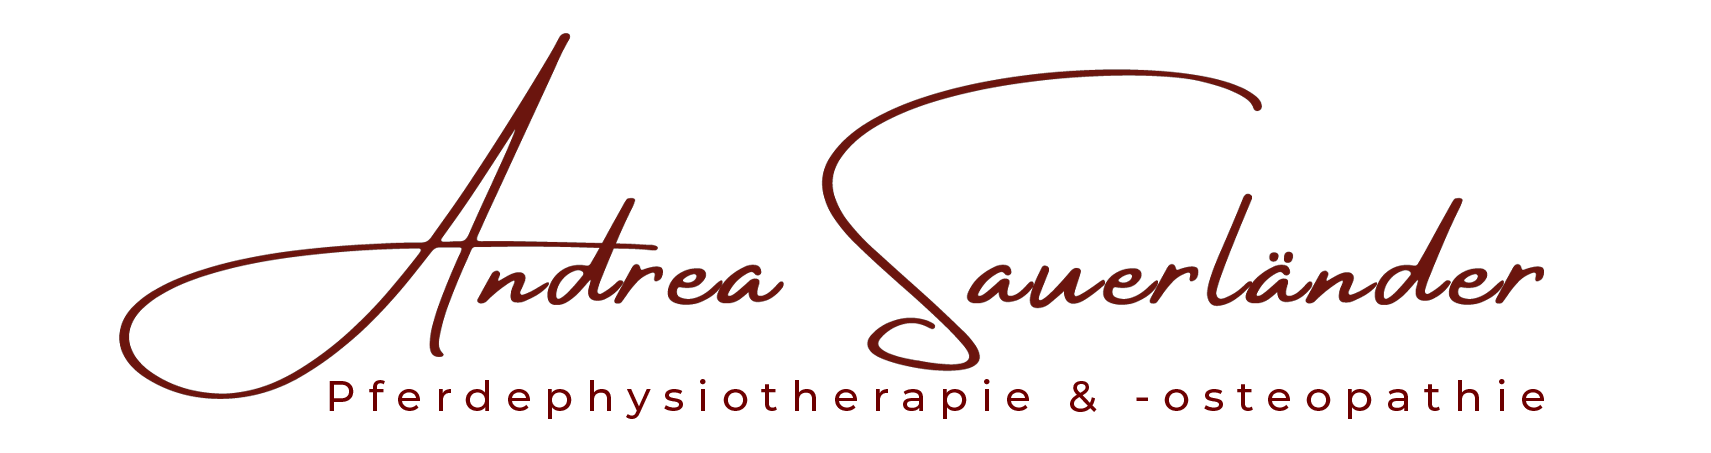 Logo von Andrea Sauerländer, Expertin für Pferdeosteopathie und Pferdephysiotherapie in Dortmund."